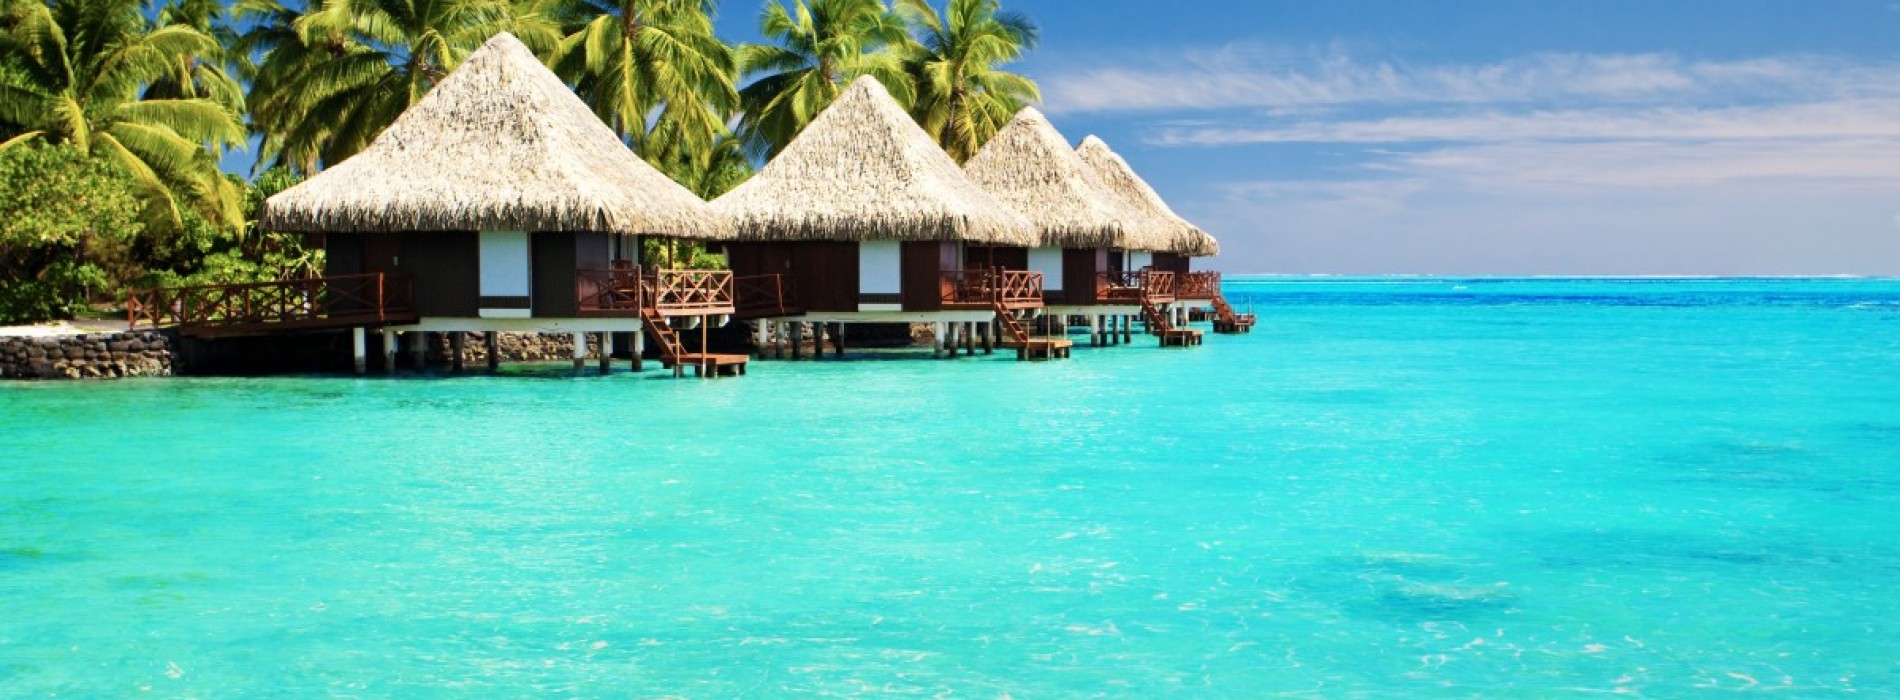 Insulele Maldive, planeta-paradis de lângă Ecuator